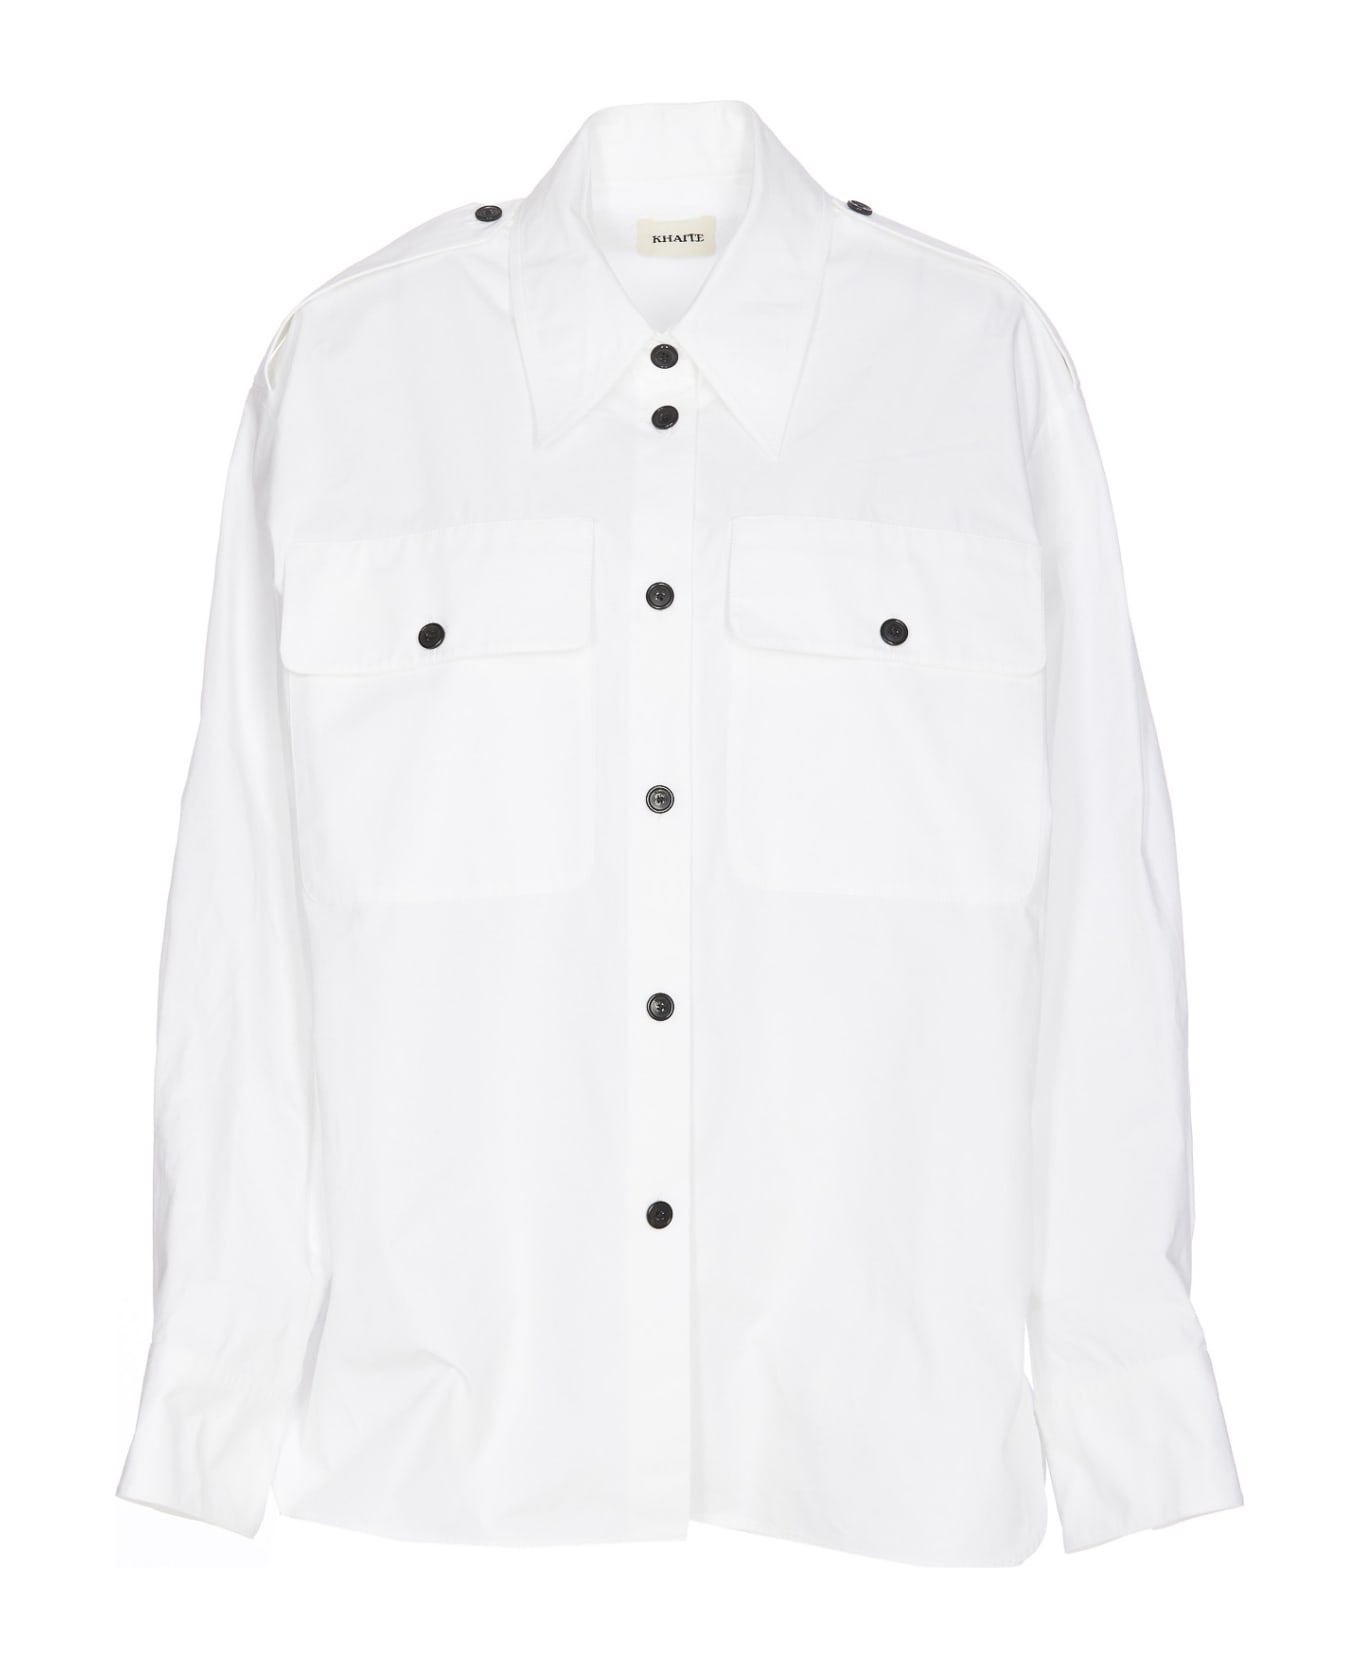 Khaite Missa Shirt - White シャツ